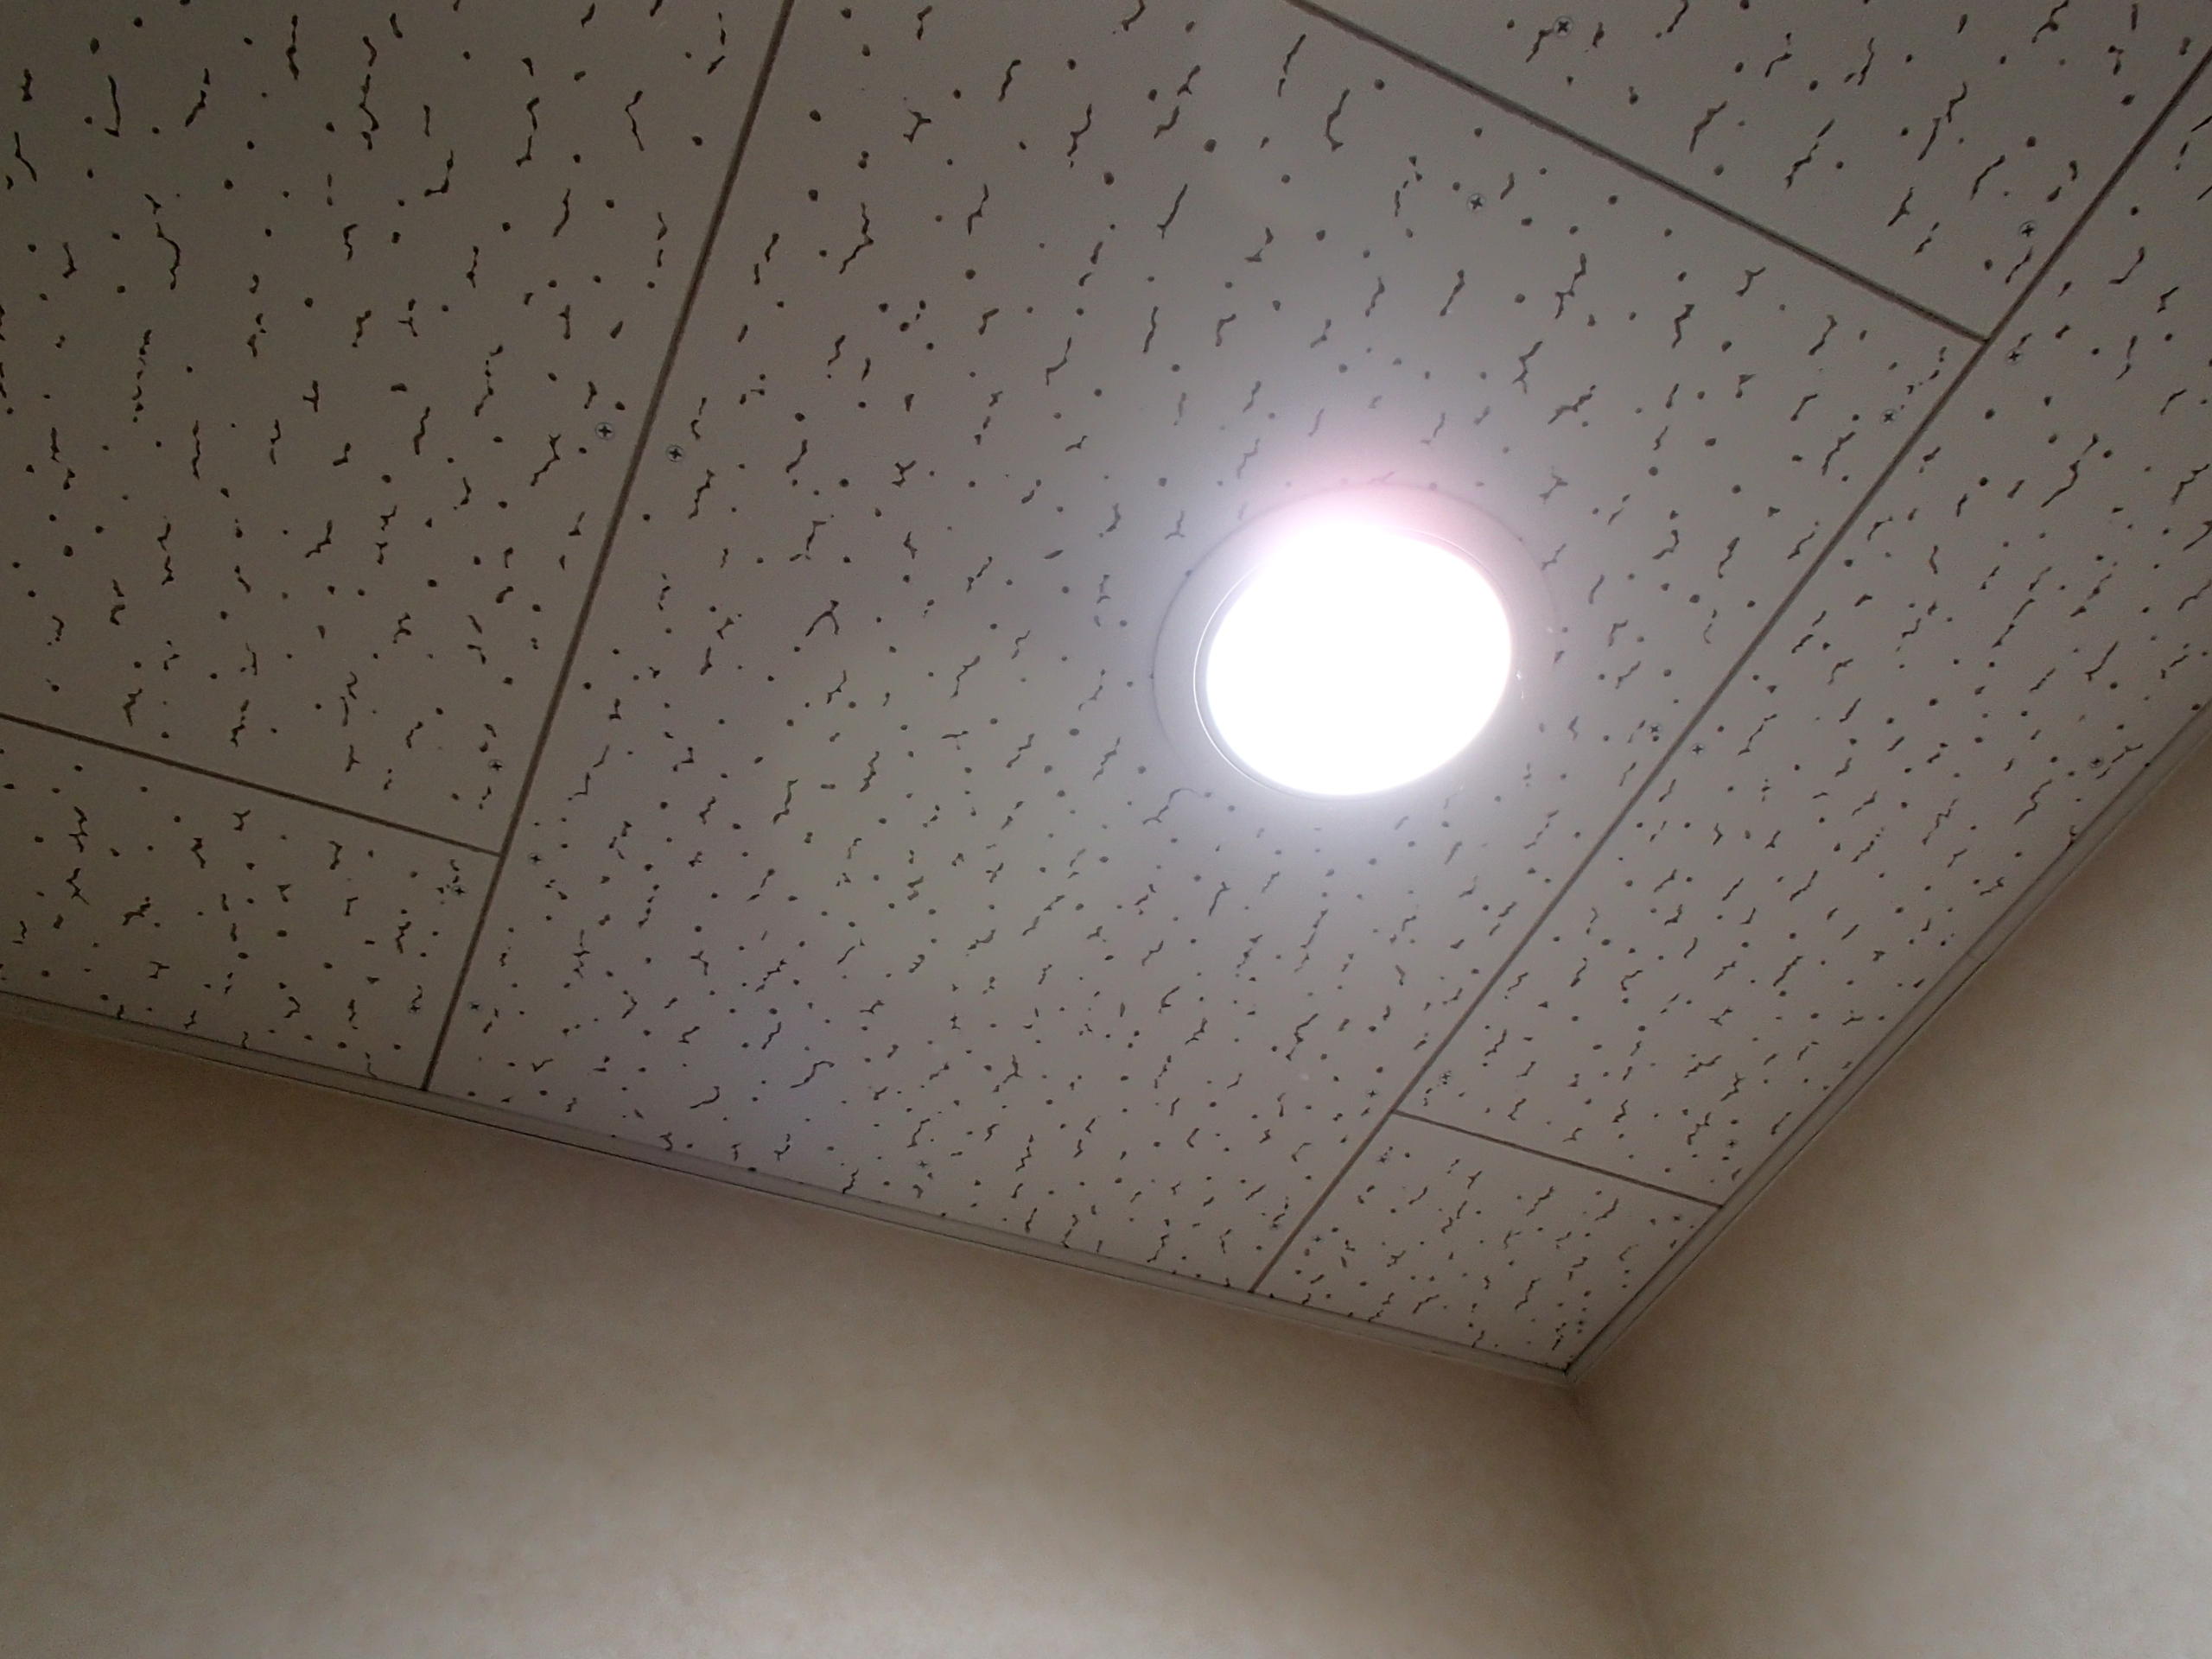 愛知県名古屋市 テナント事務所ビル共用トイレLEDダウンライト照明器具取替え交換工事画像